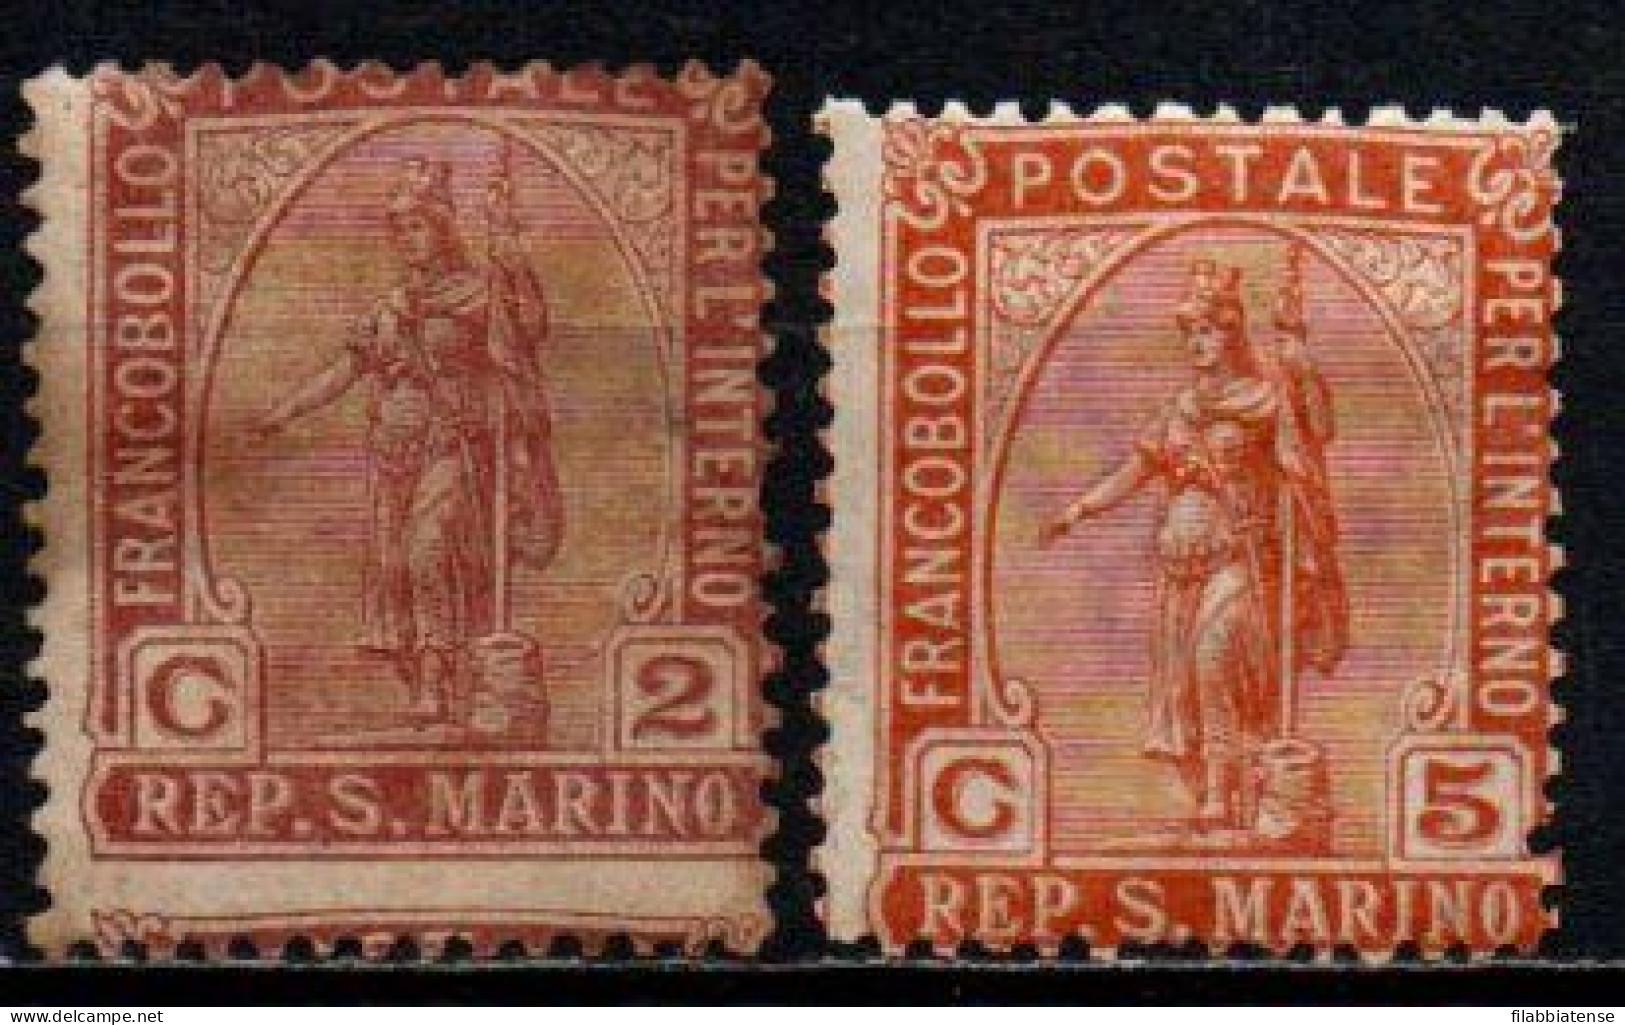 1899 - San Marino 32/33 Statua Della Libertà  ++++++ - Neufs